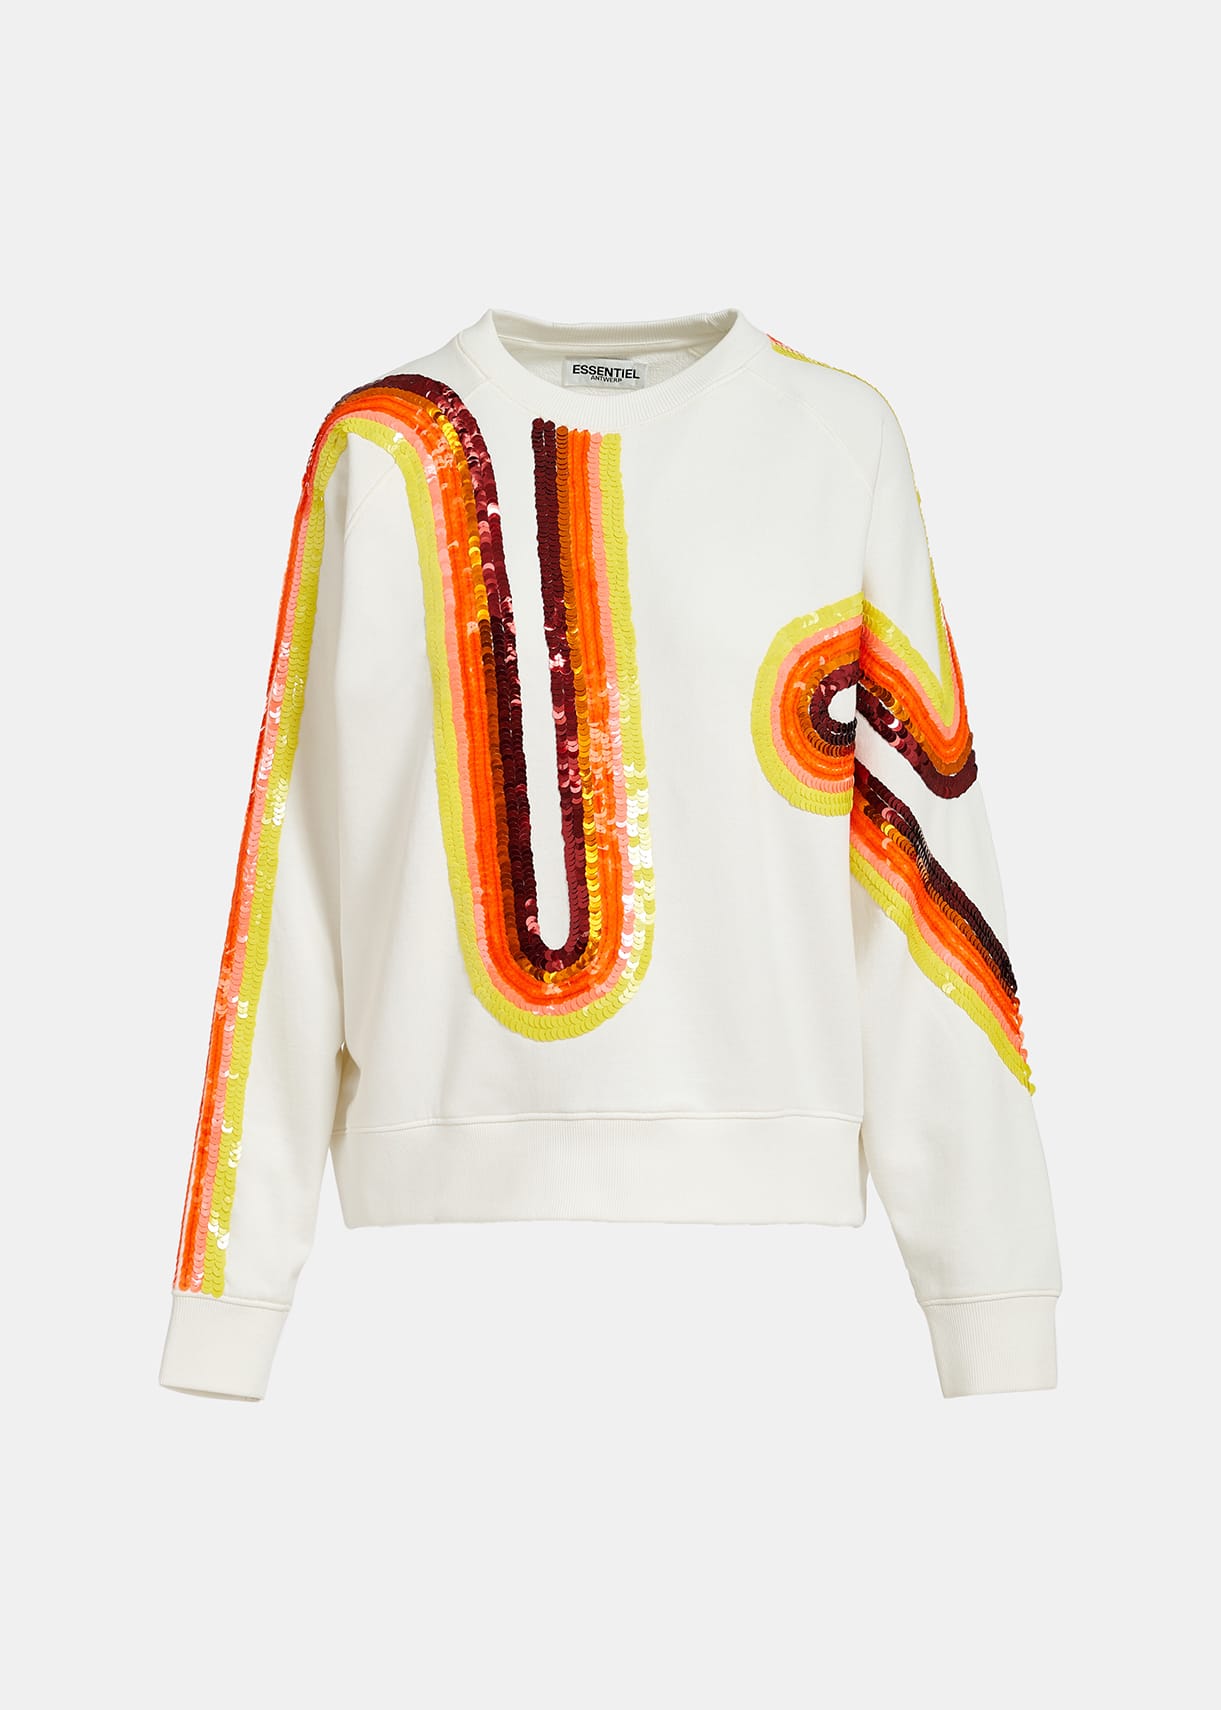 Filicudi - Cremeweißes Sweatshirt mit mehrfarbiger Paillettenstickerei